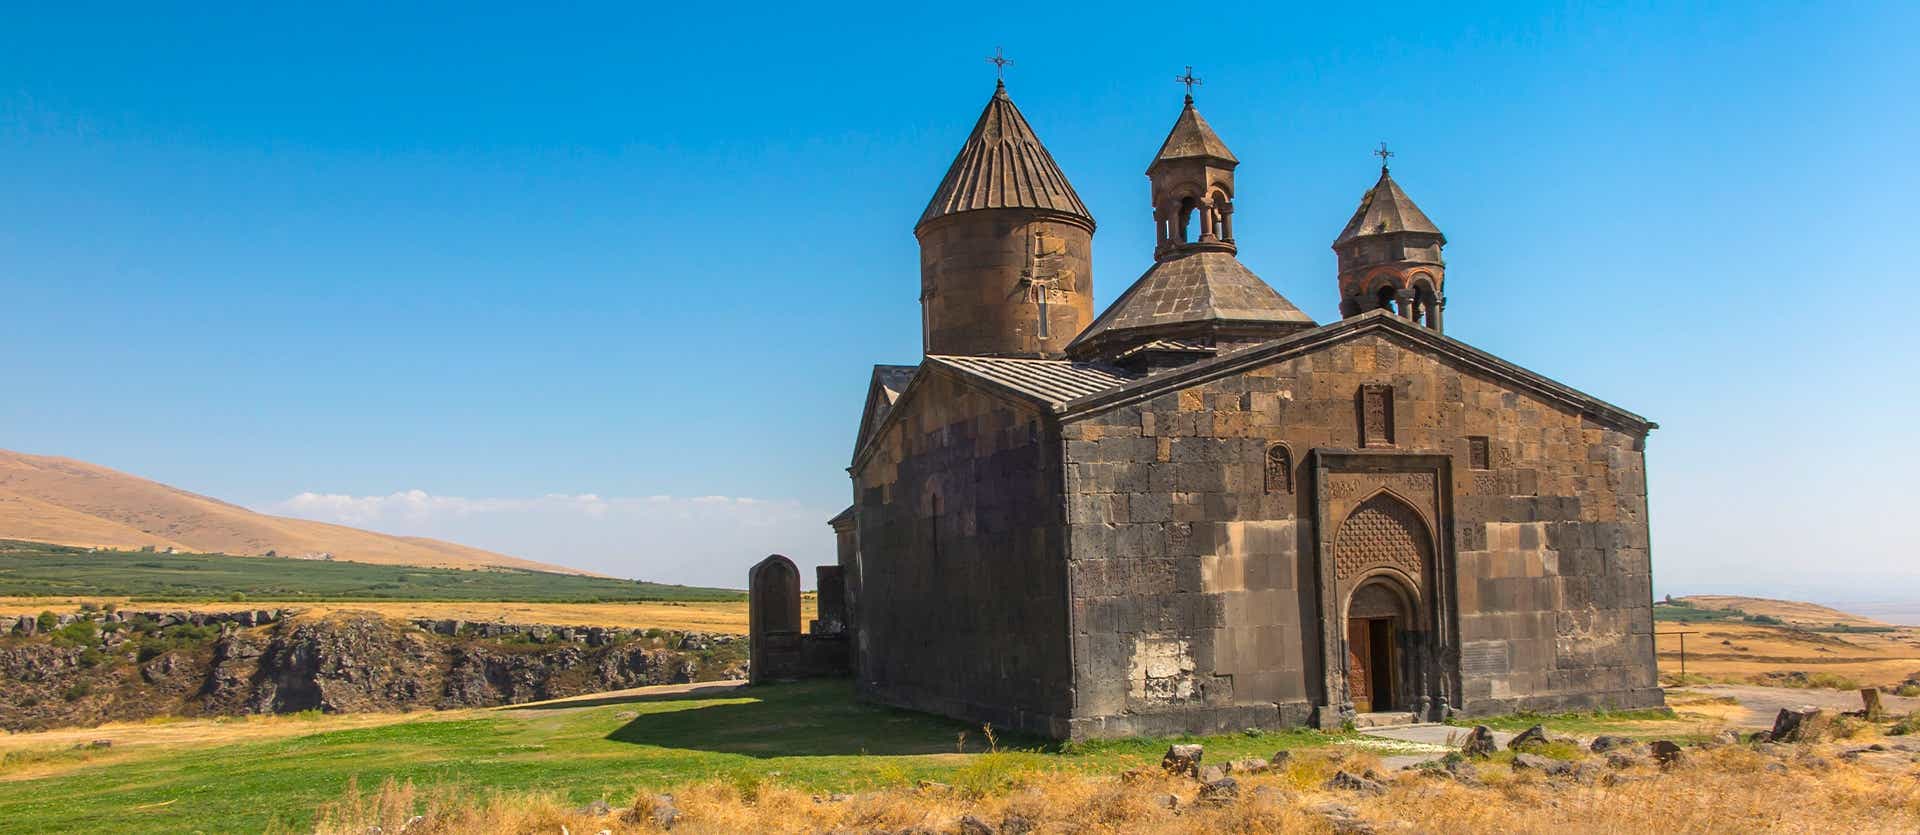 Saghmosavank Monastery <span class="iconos separador"></span> Yerevan <span class="iconos separador"></span> Armenia